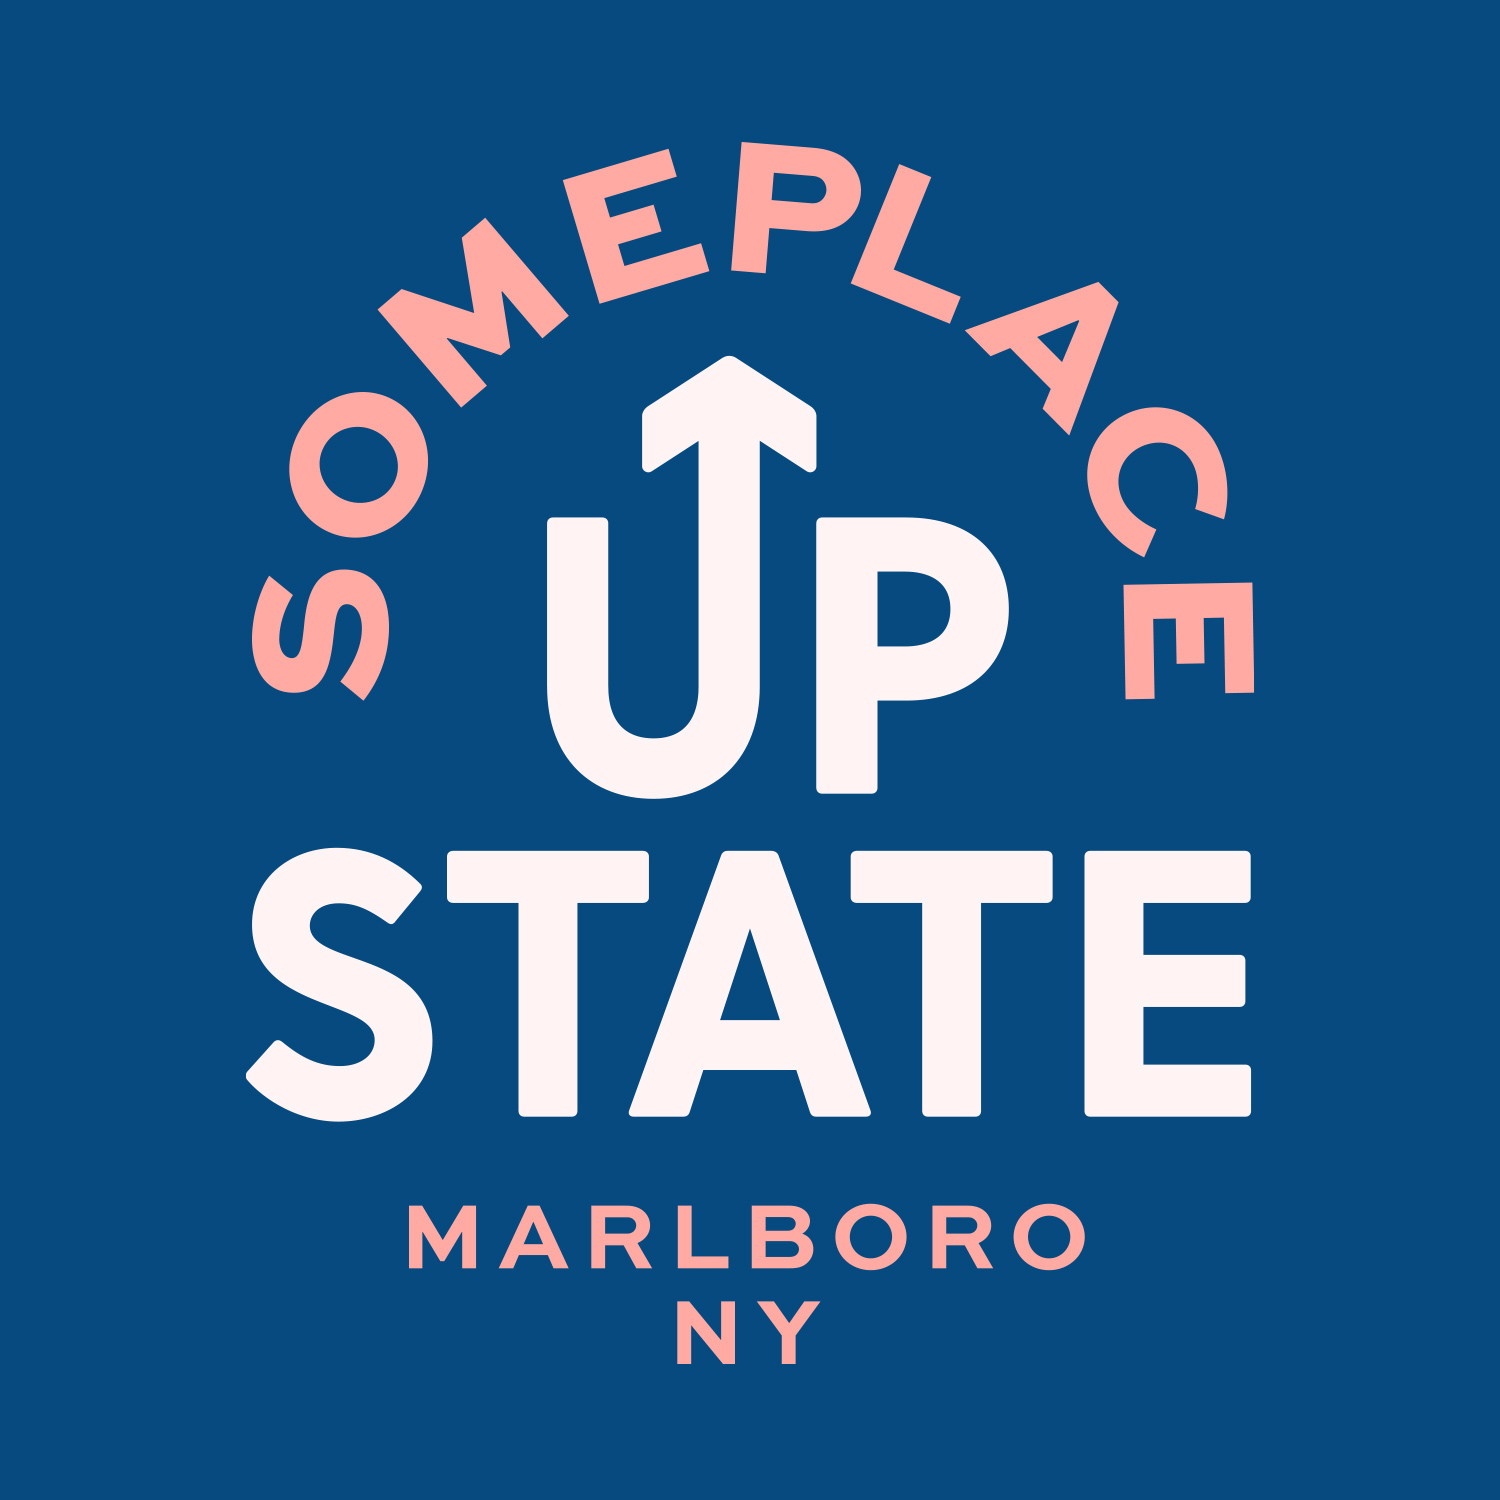 wordmark reading 'someplace upstate, marlboro, ny'